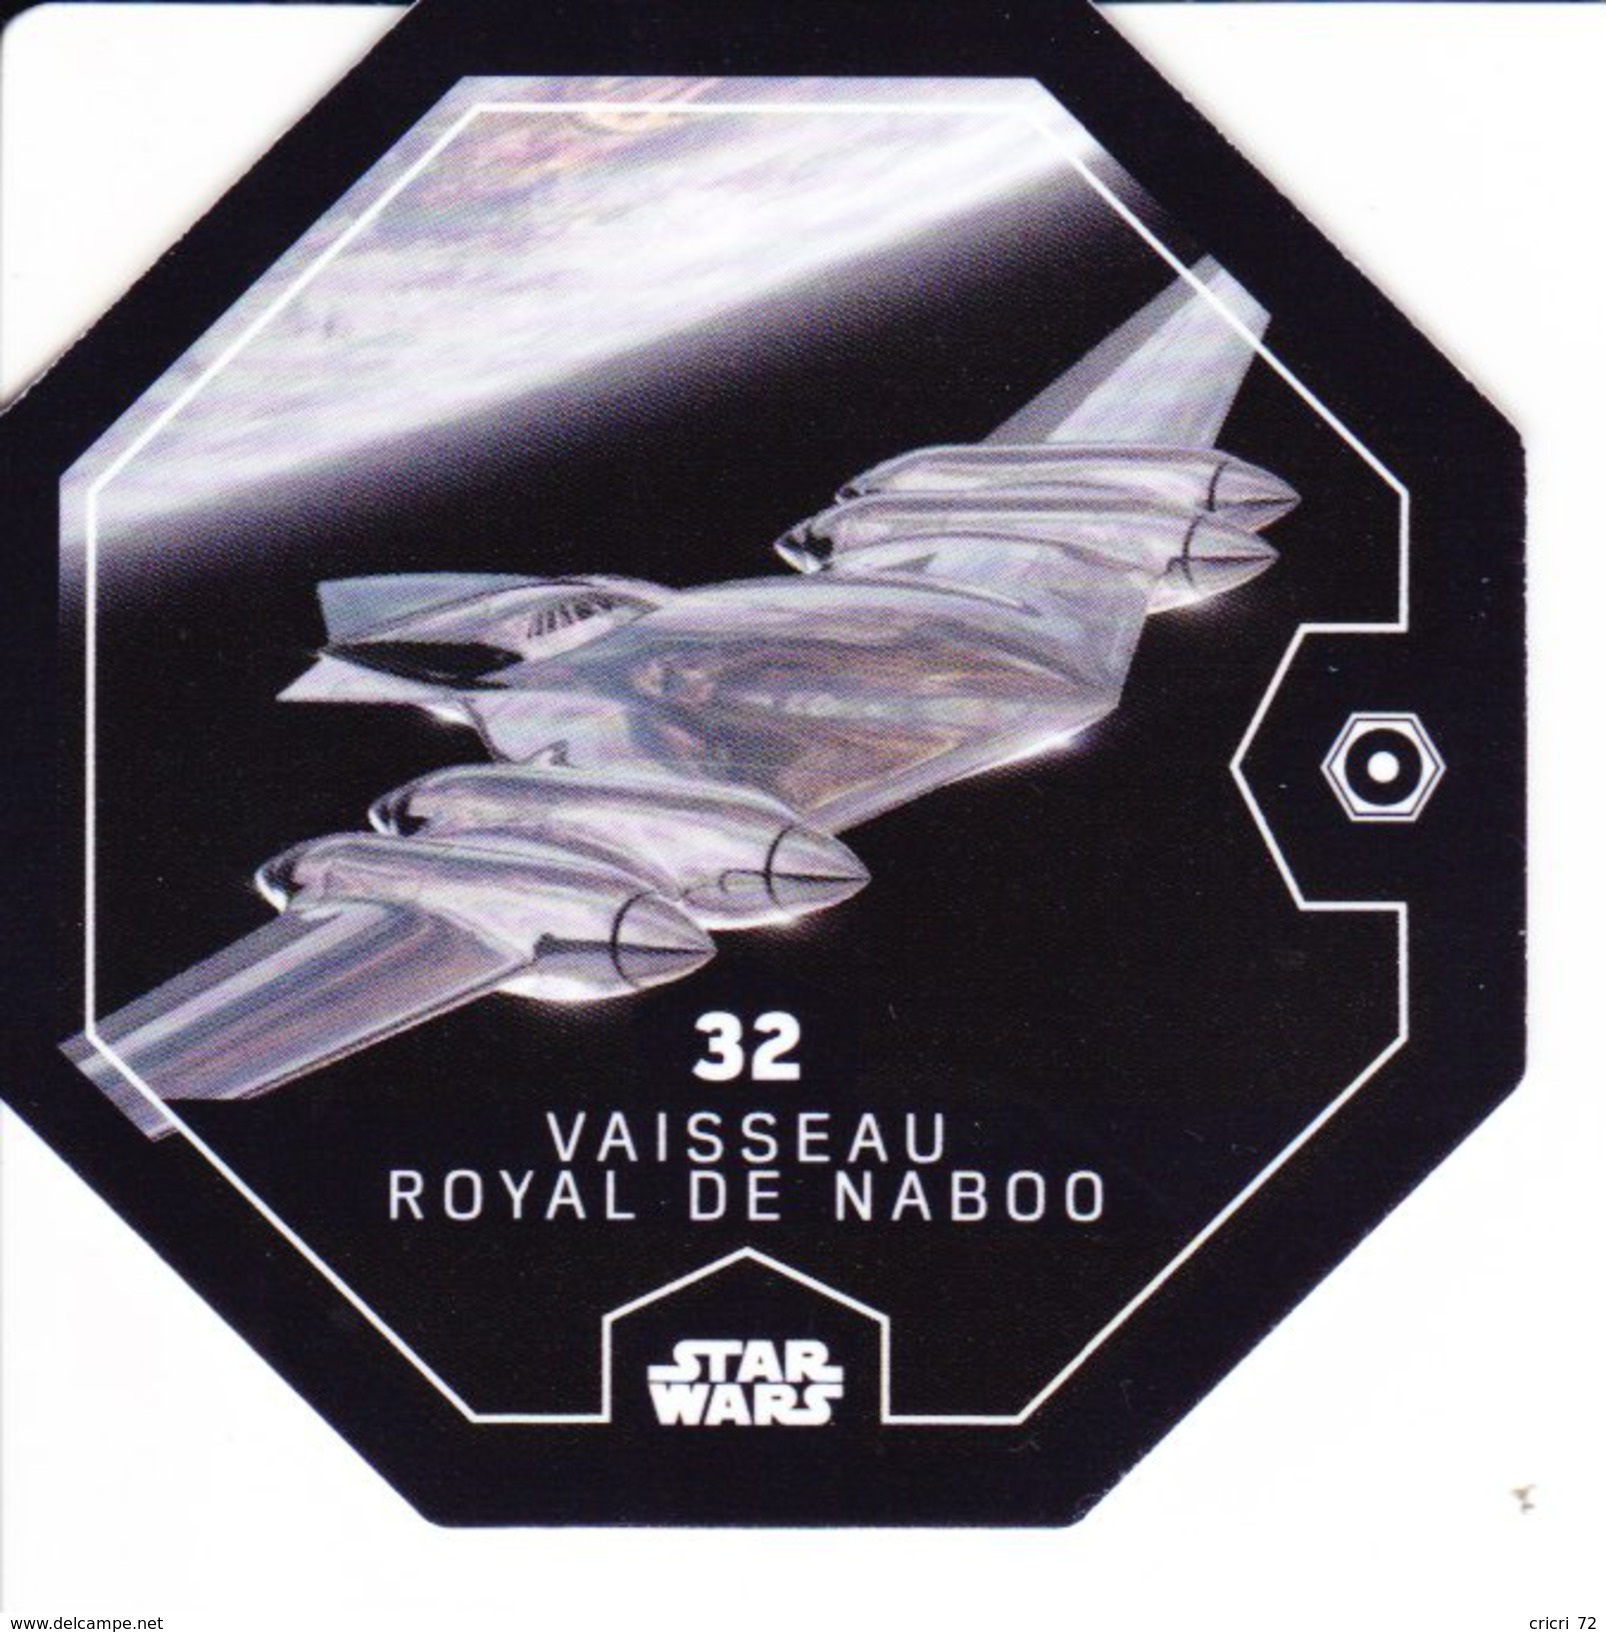 32 VAISSEAU ROYAL DE NABOO 2016 STAR WARS LECLERC COSMIC SHELLS - Episode II